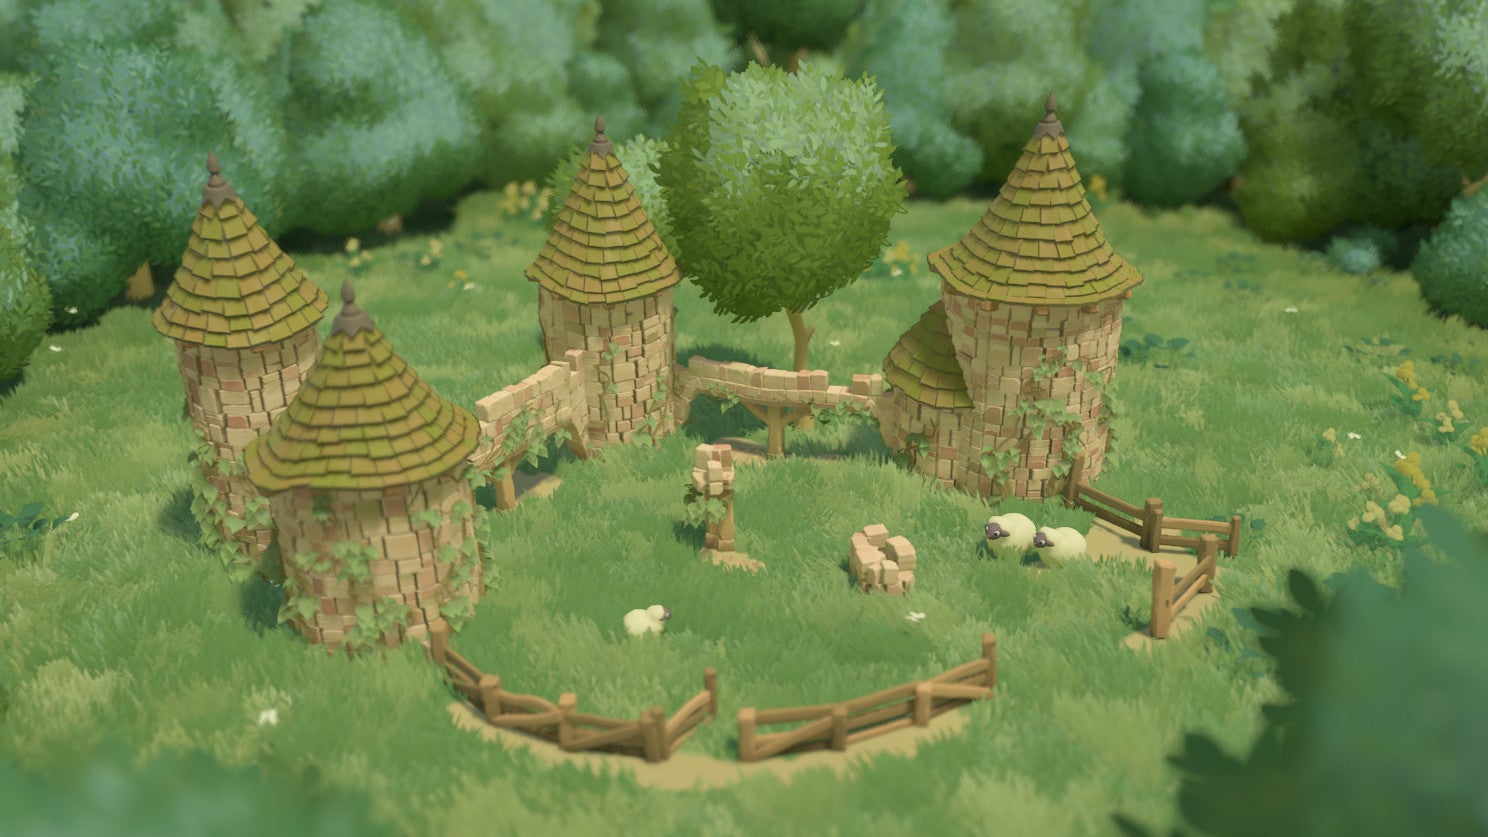 A cute village diorama in a Tiny Glade screenshot.